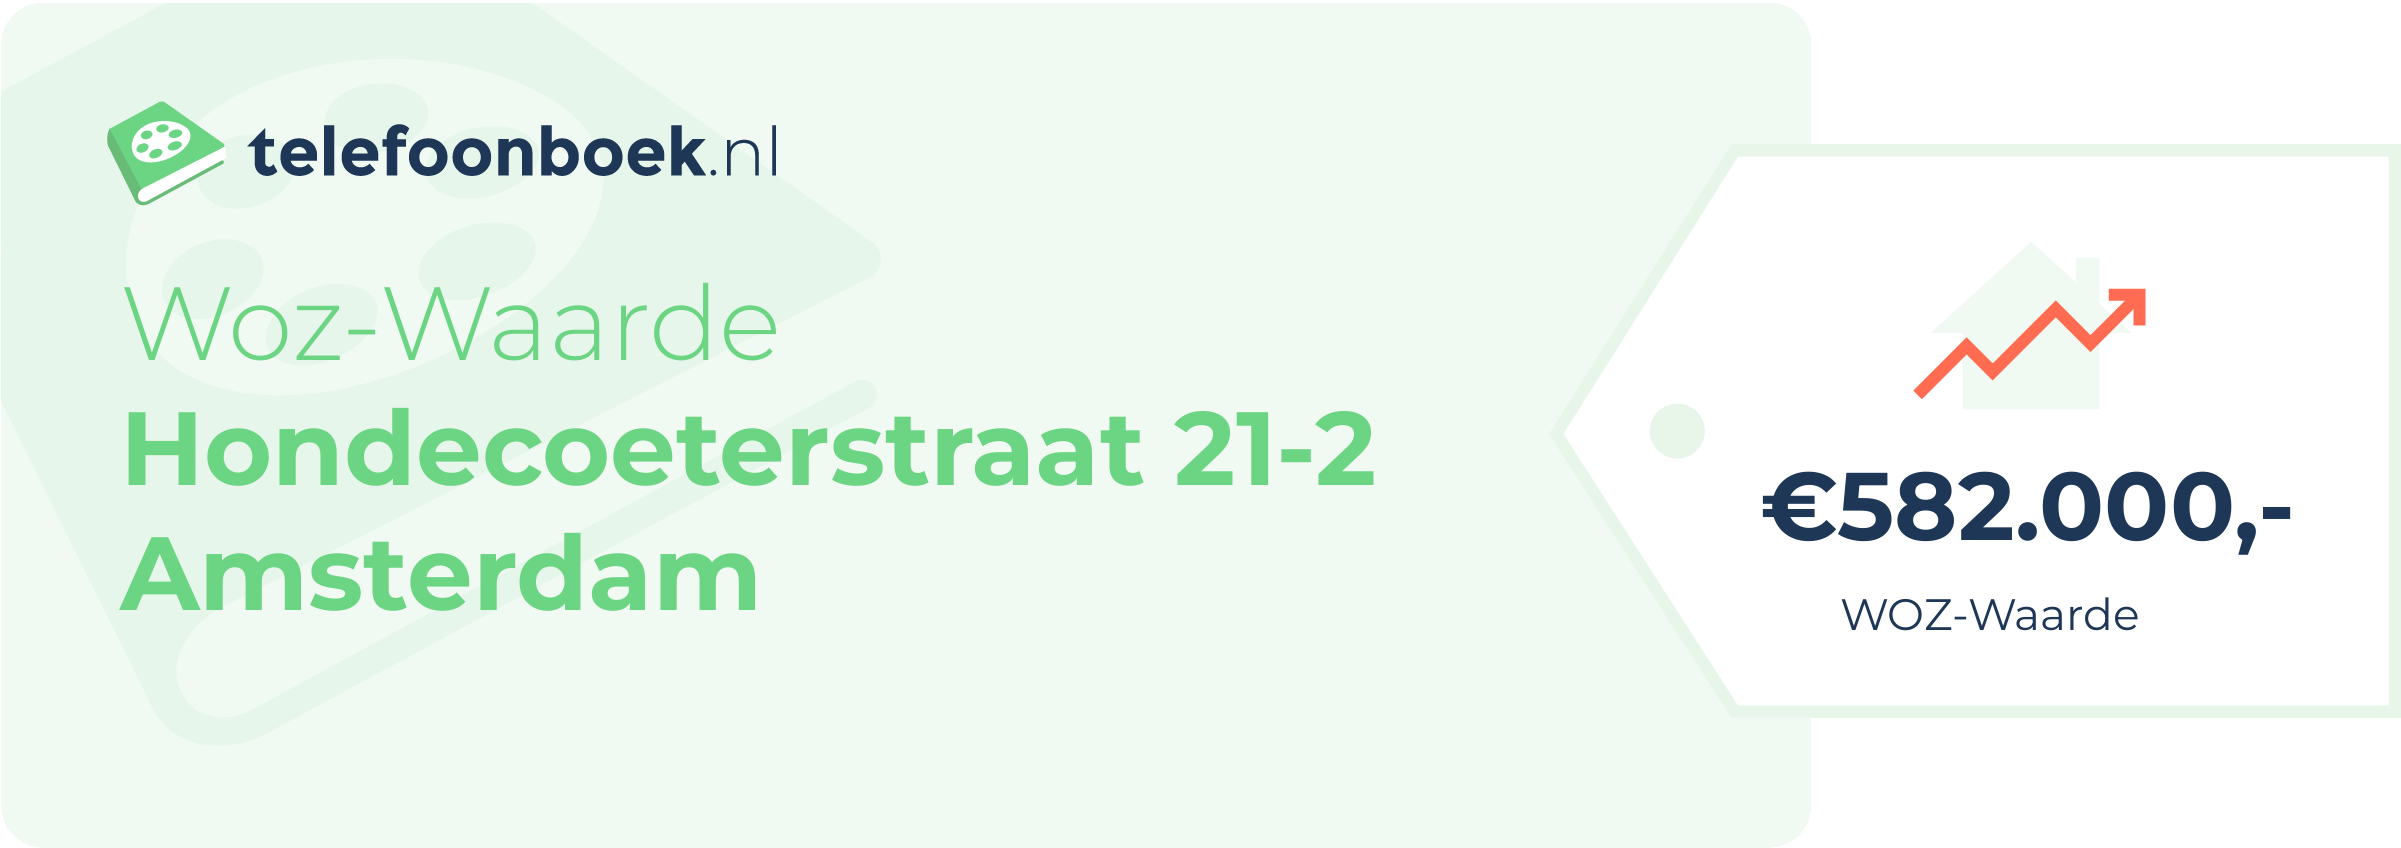 WOZ-waarde Hondecoeterstraat 21-2 Amsterdam